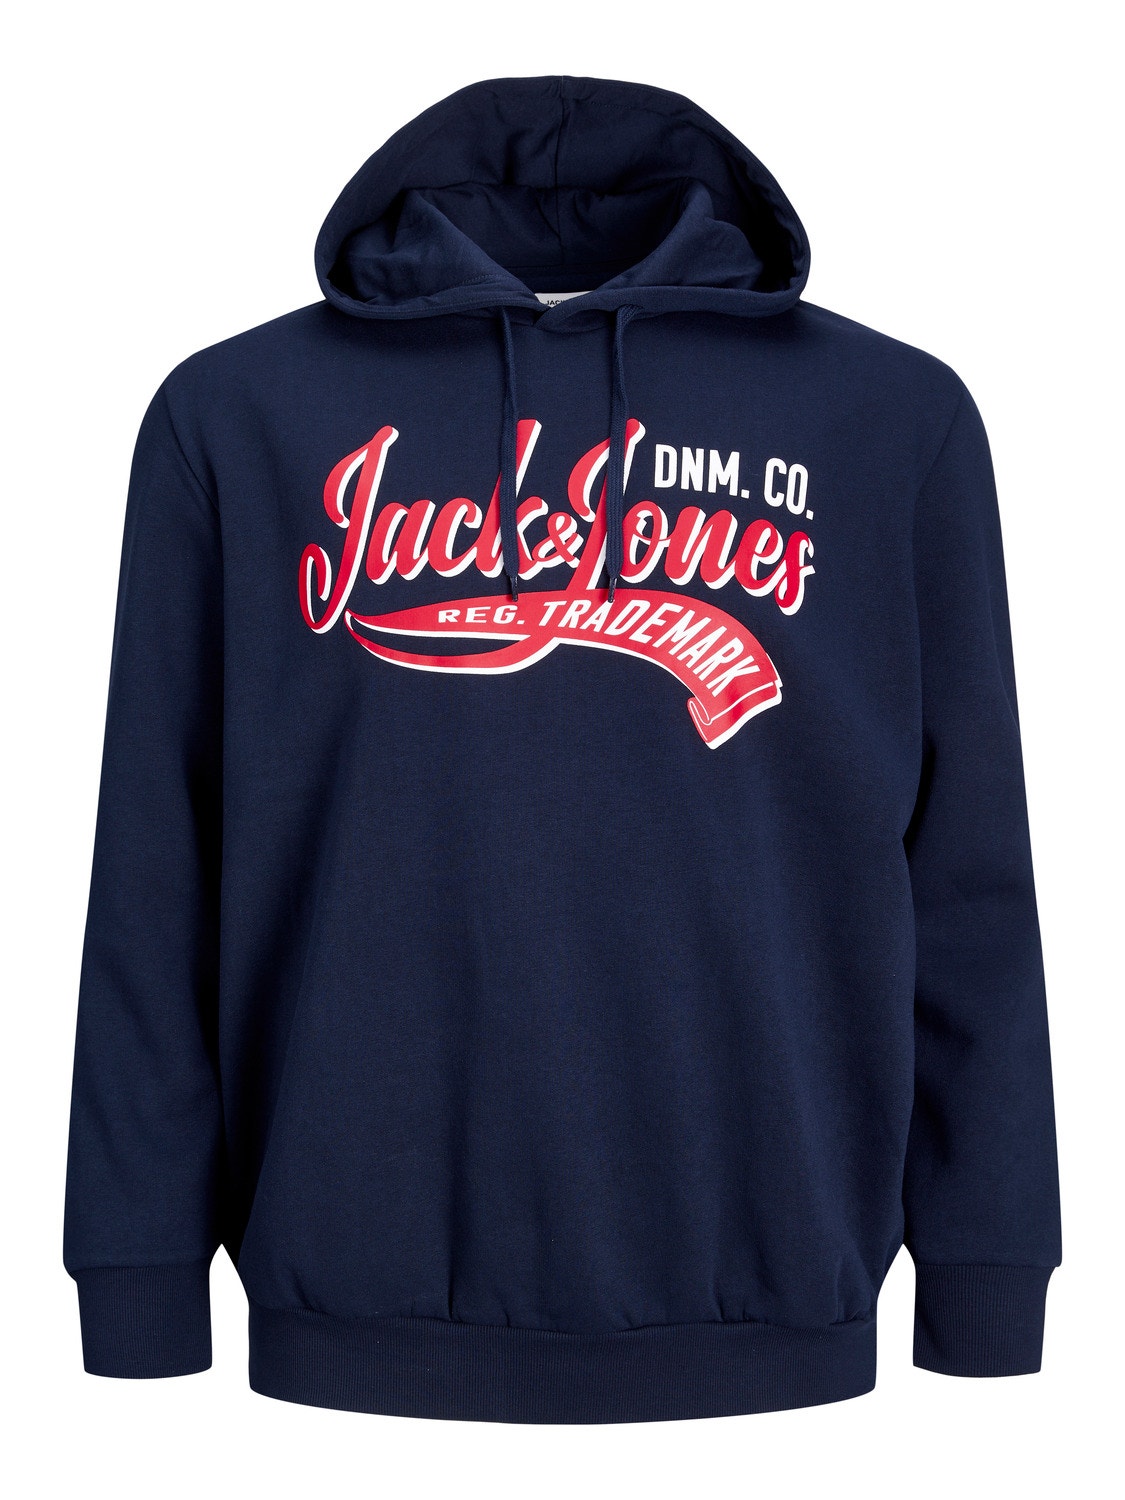 Jack & Jones Plus Size Z logo Bluza z kapturem -Navy Blazer - 12236803